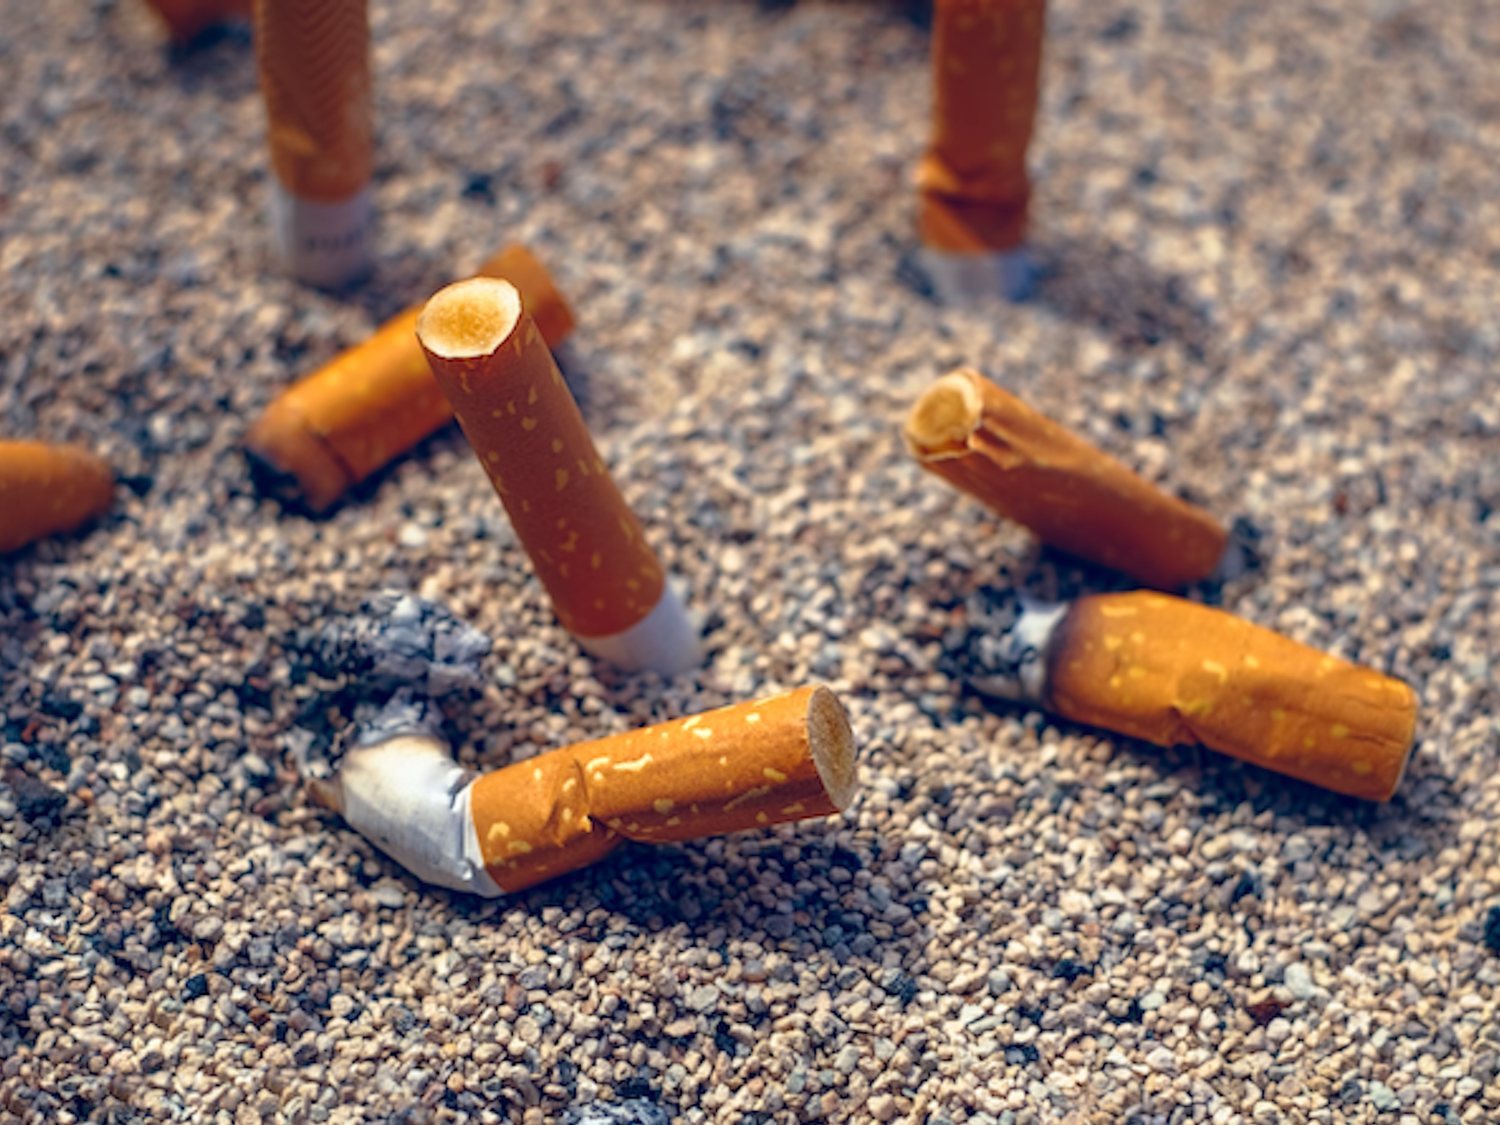 Portugal pondrá multas de hasta 250 euros por tirar colillas de tabaco al suelo